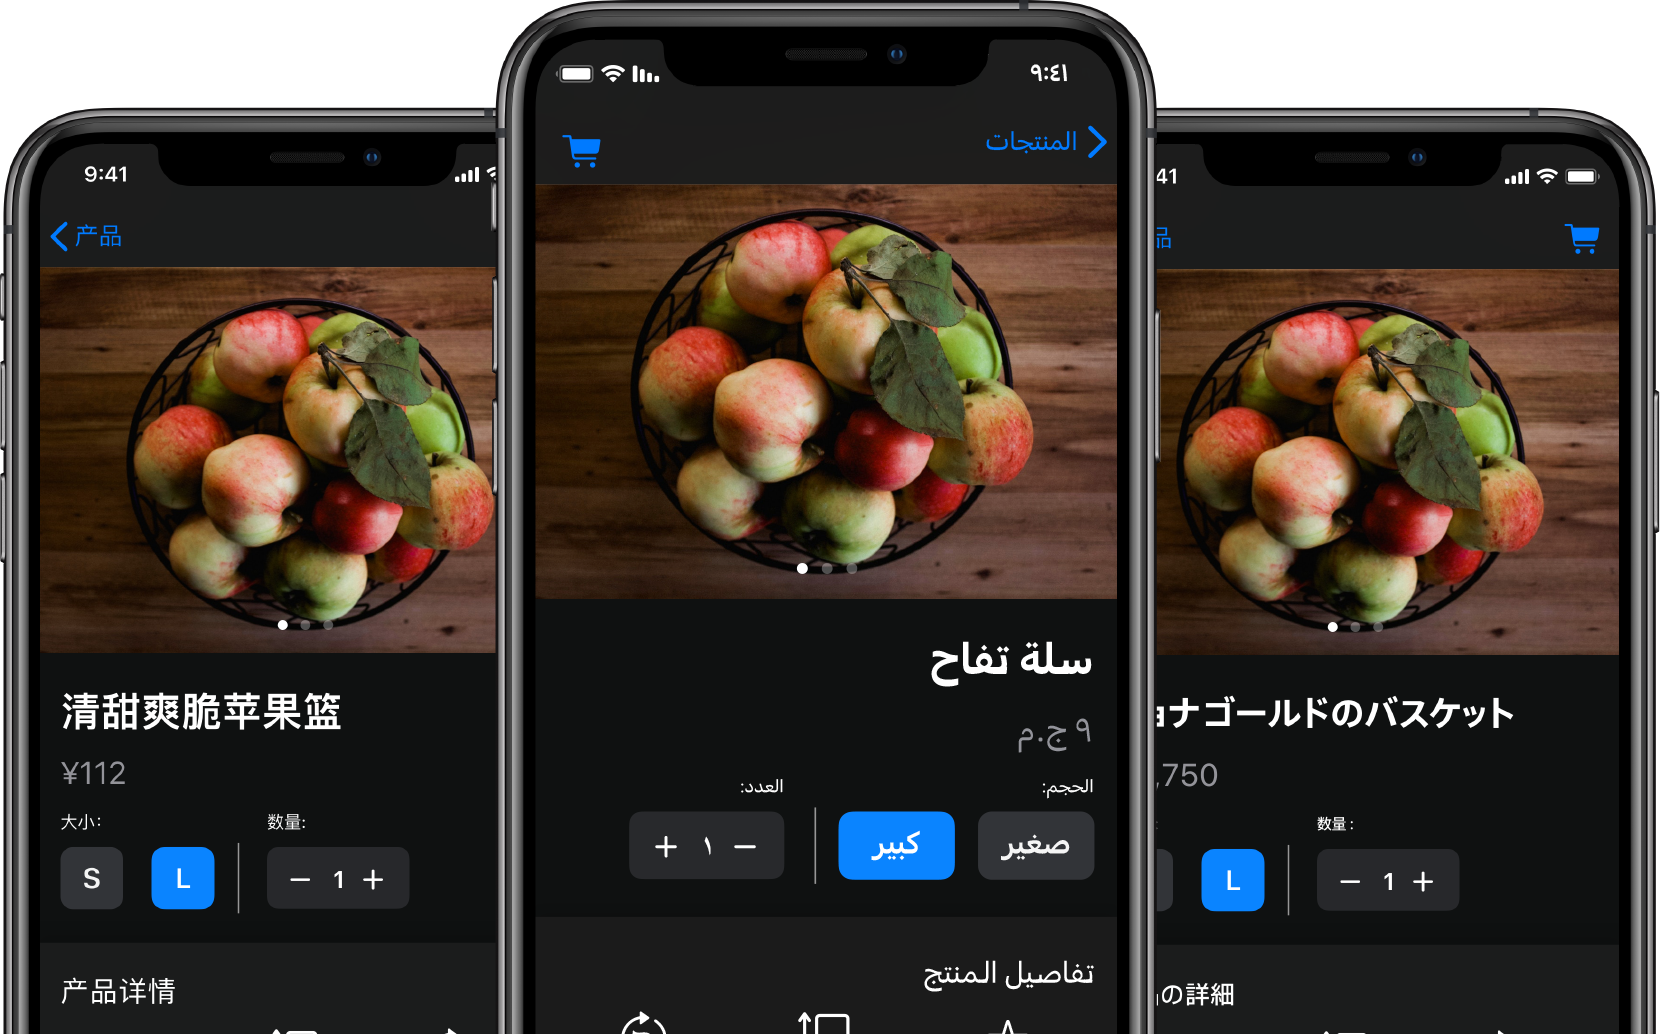 三台打开了订餐 App 的 iPhone。每台 iPhone 的文本内容都被翻译成不同的语言。